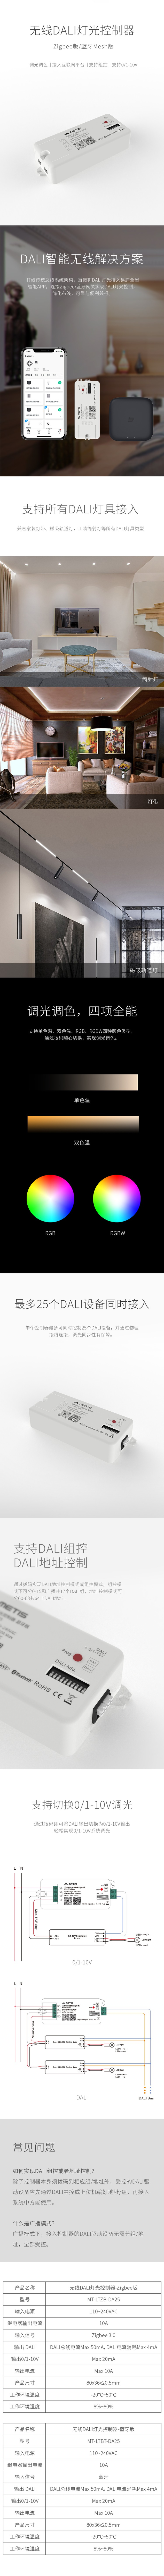 【雅系列】无线DALI灯光控制器.jpg